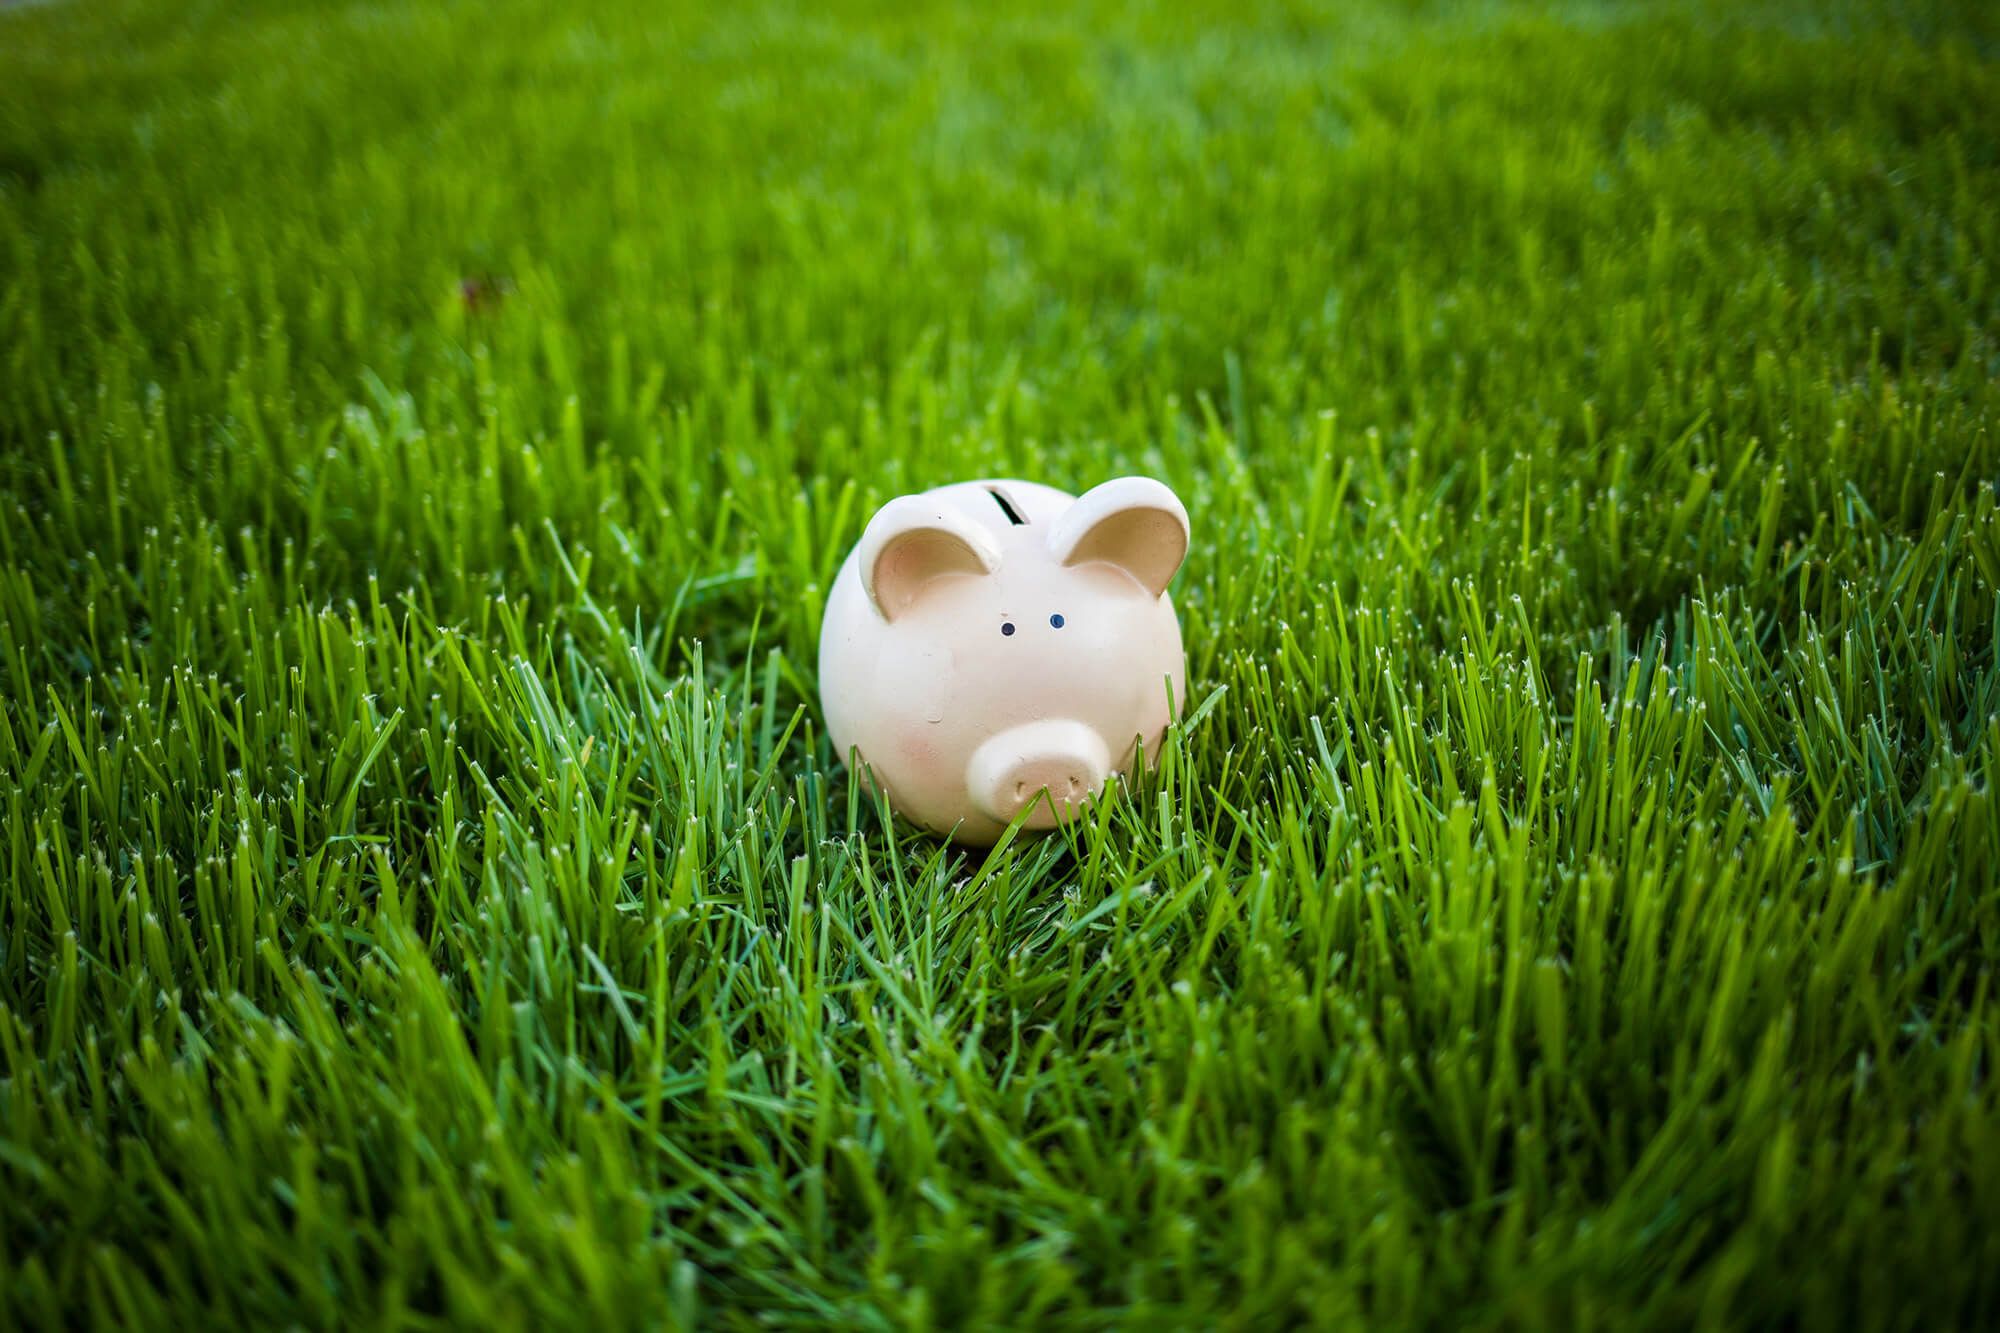 Piggy bank in green grass